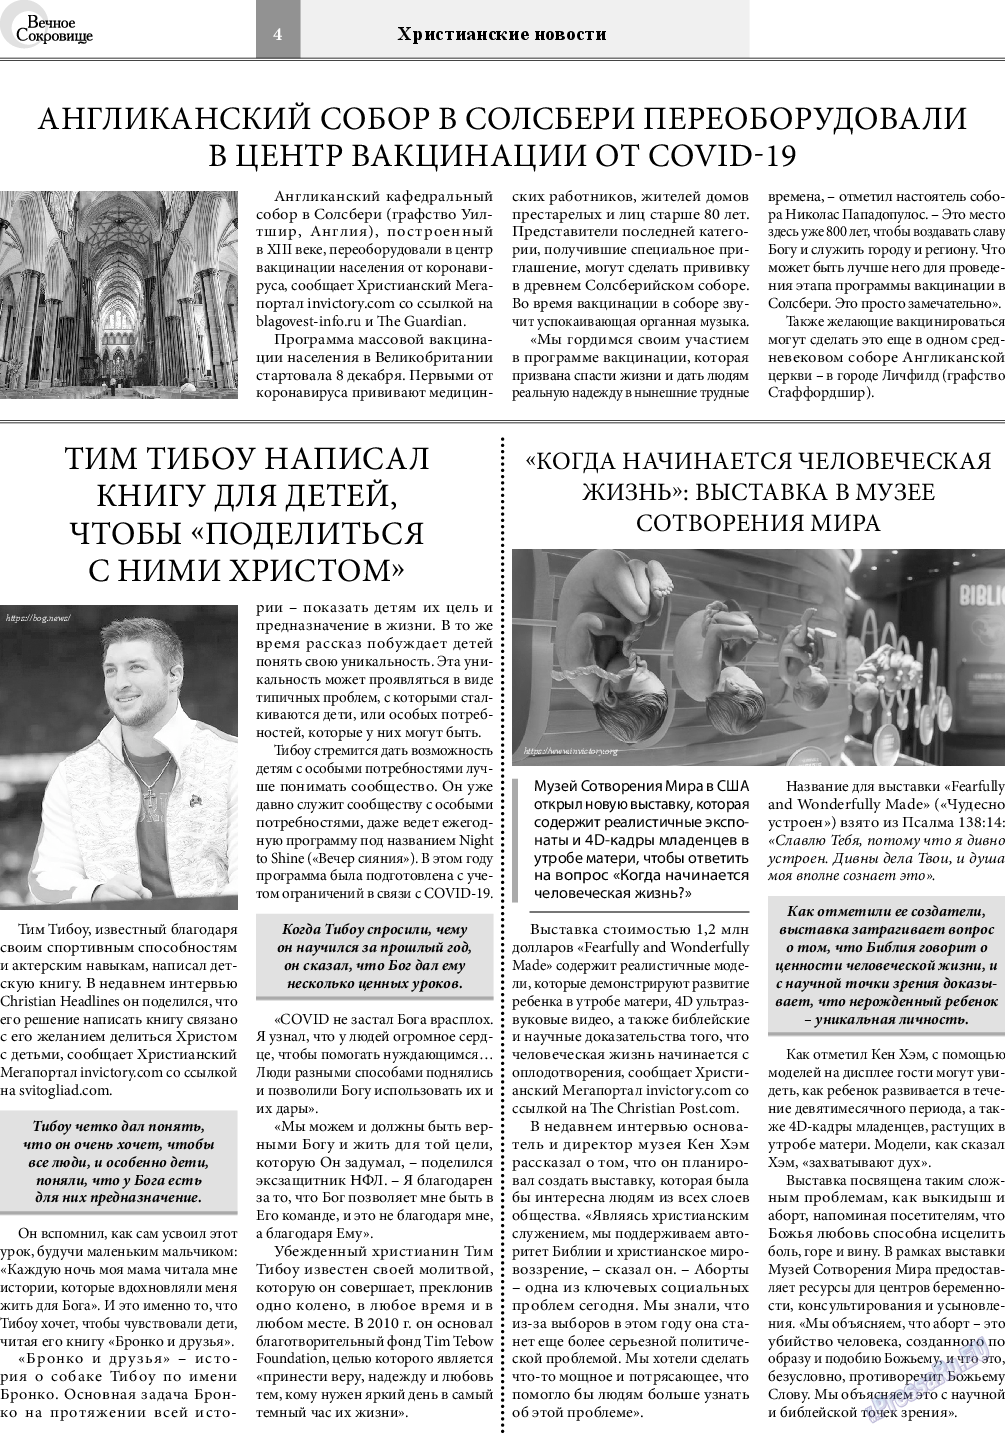 Вечное сокровище, газета. 2021 №2 стр.4